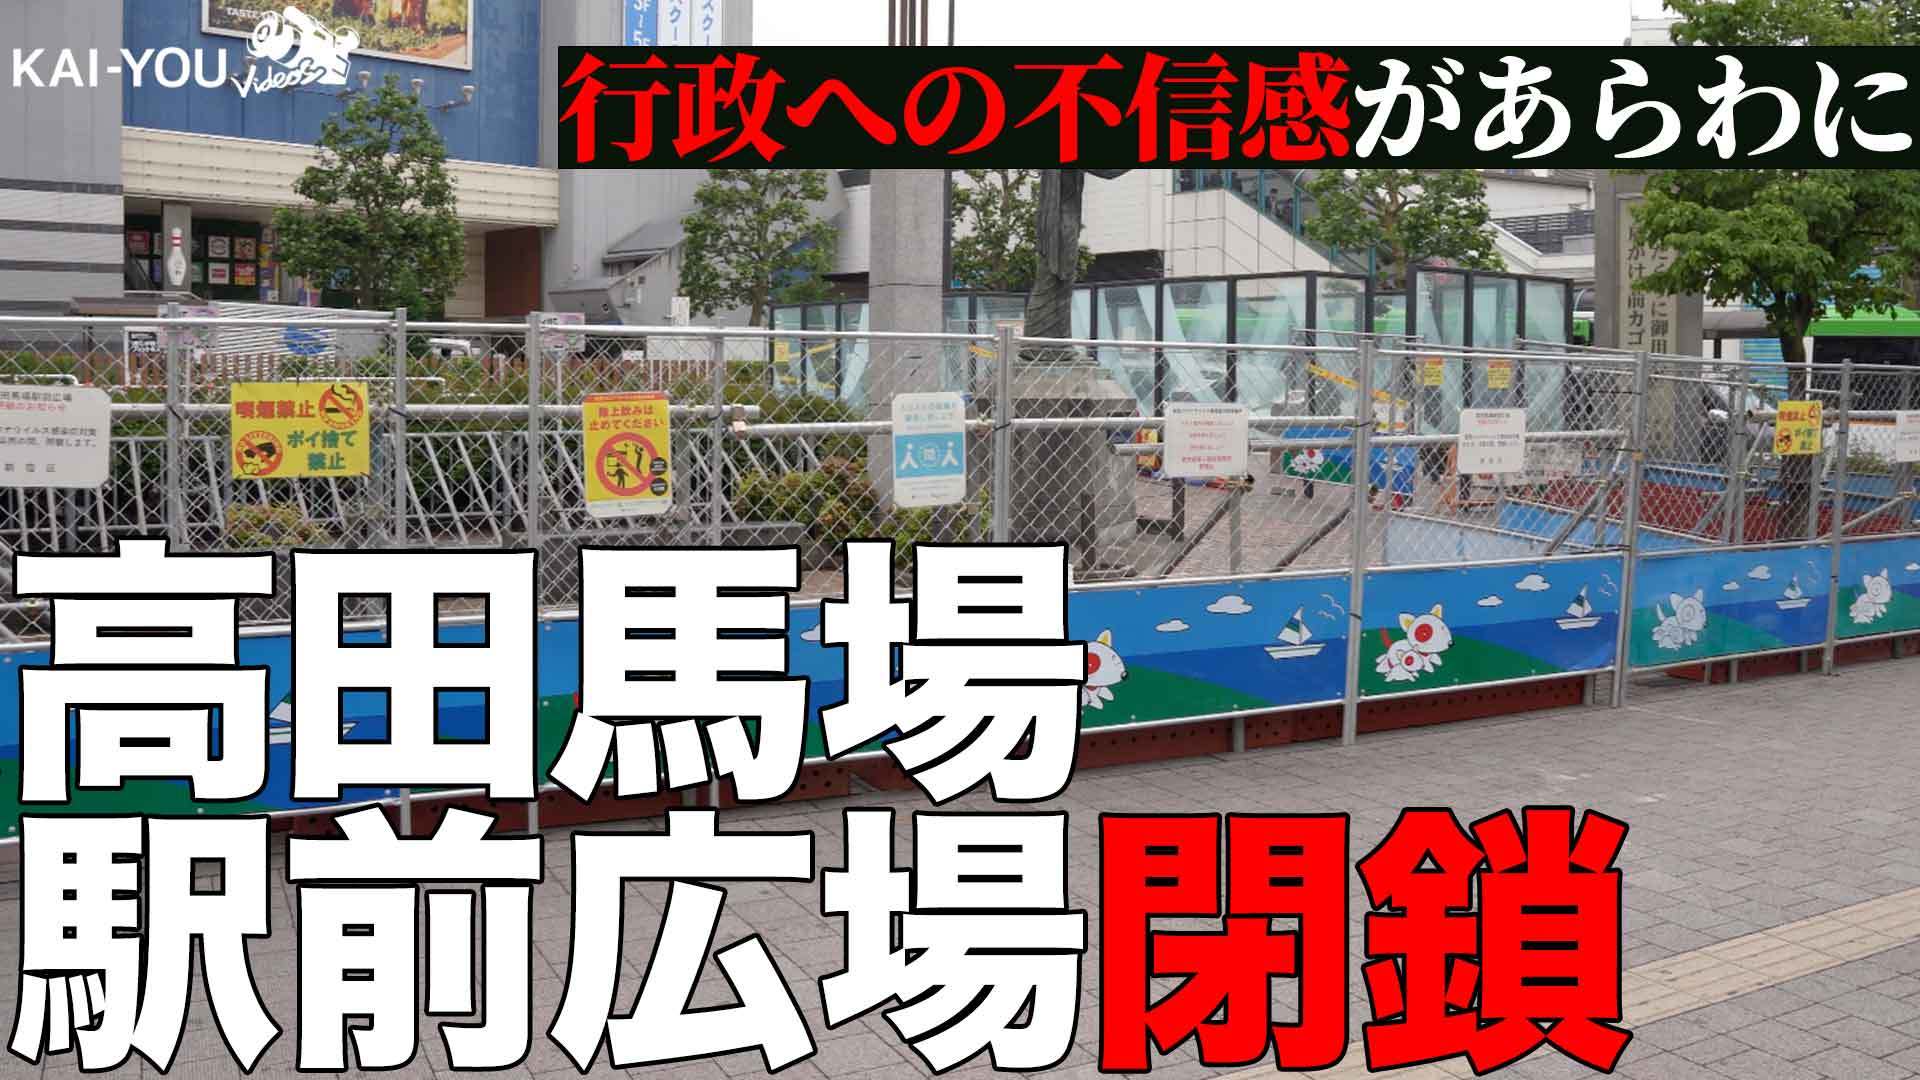 画像2 動画 バカみたい 路上飲み対策で高田馬場の広場閉鎖 疑問の声もの画像 Kai You Net